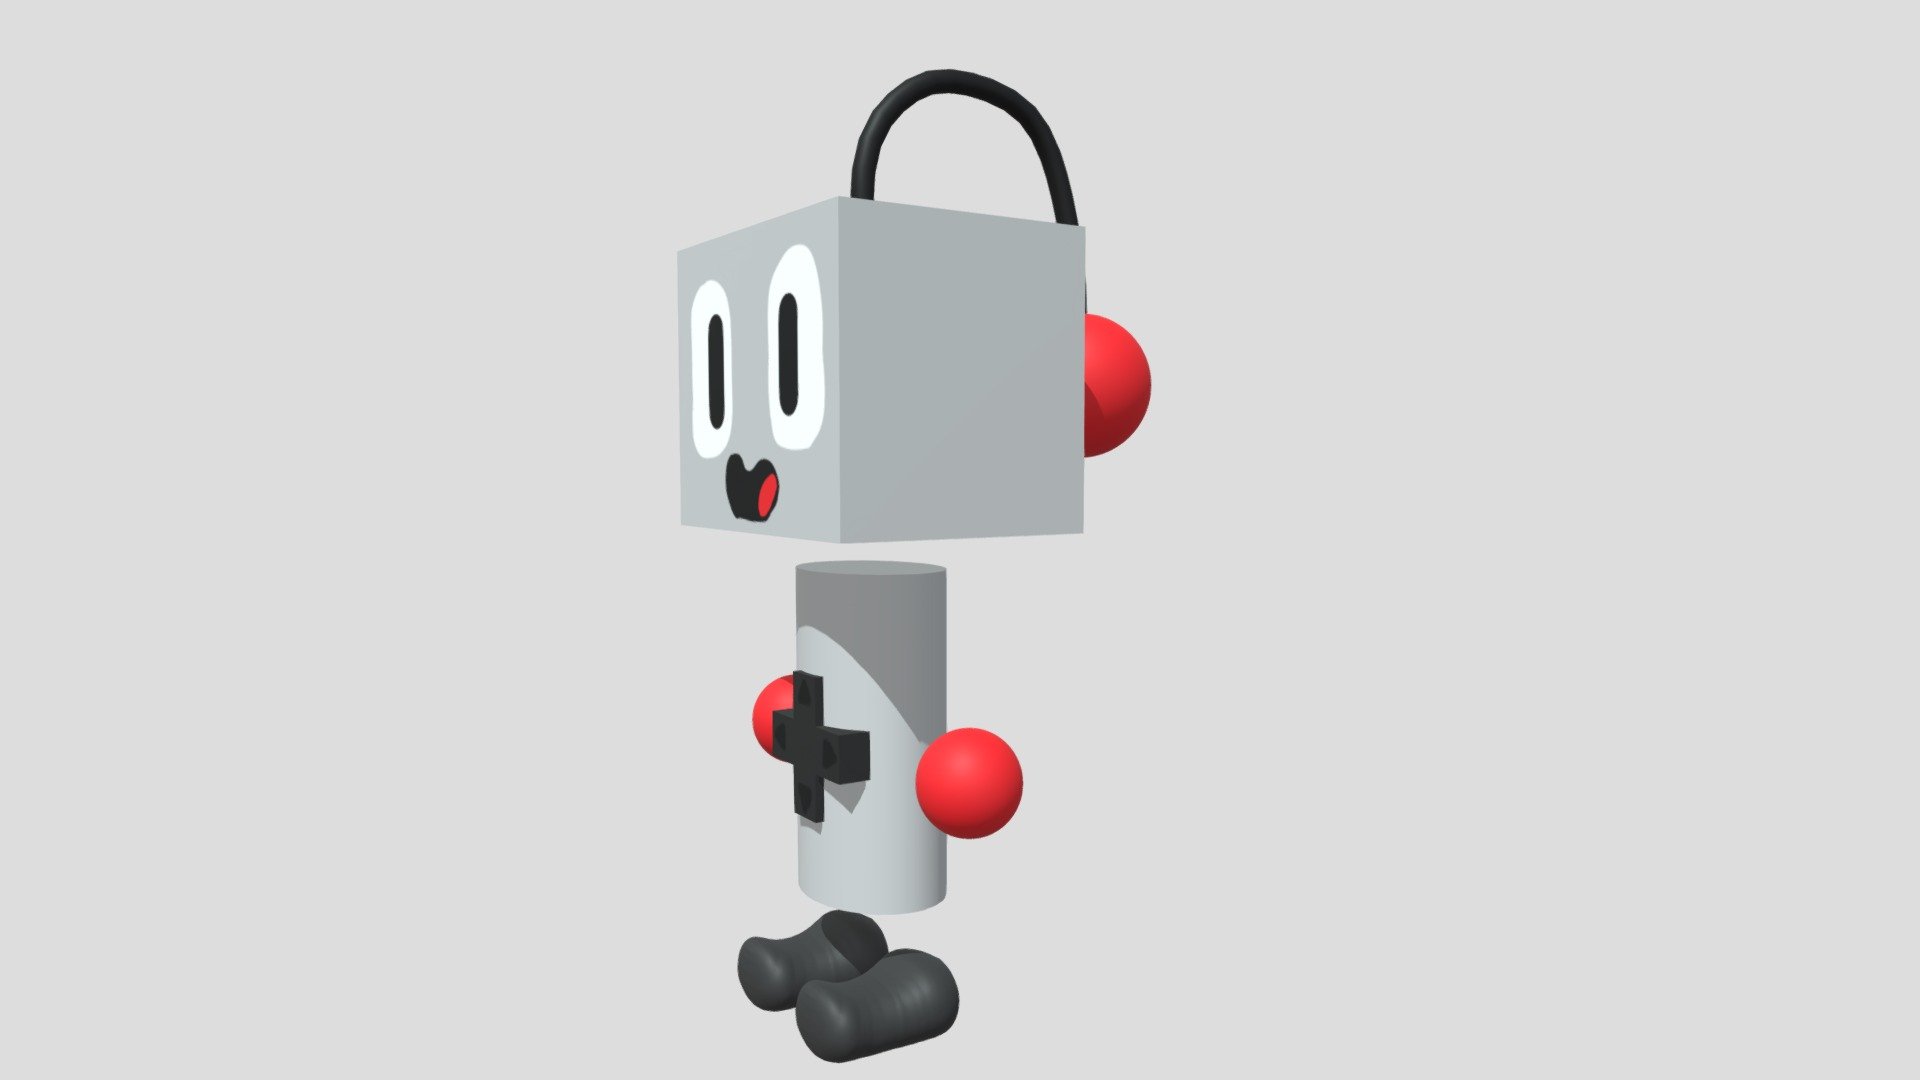 Nessy the NES Robot